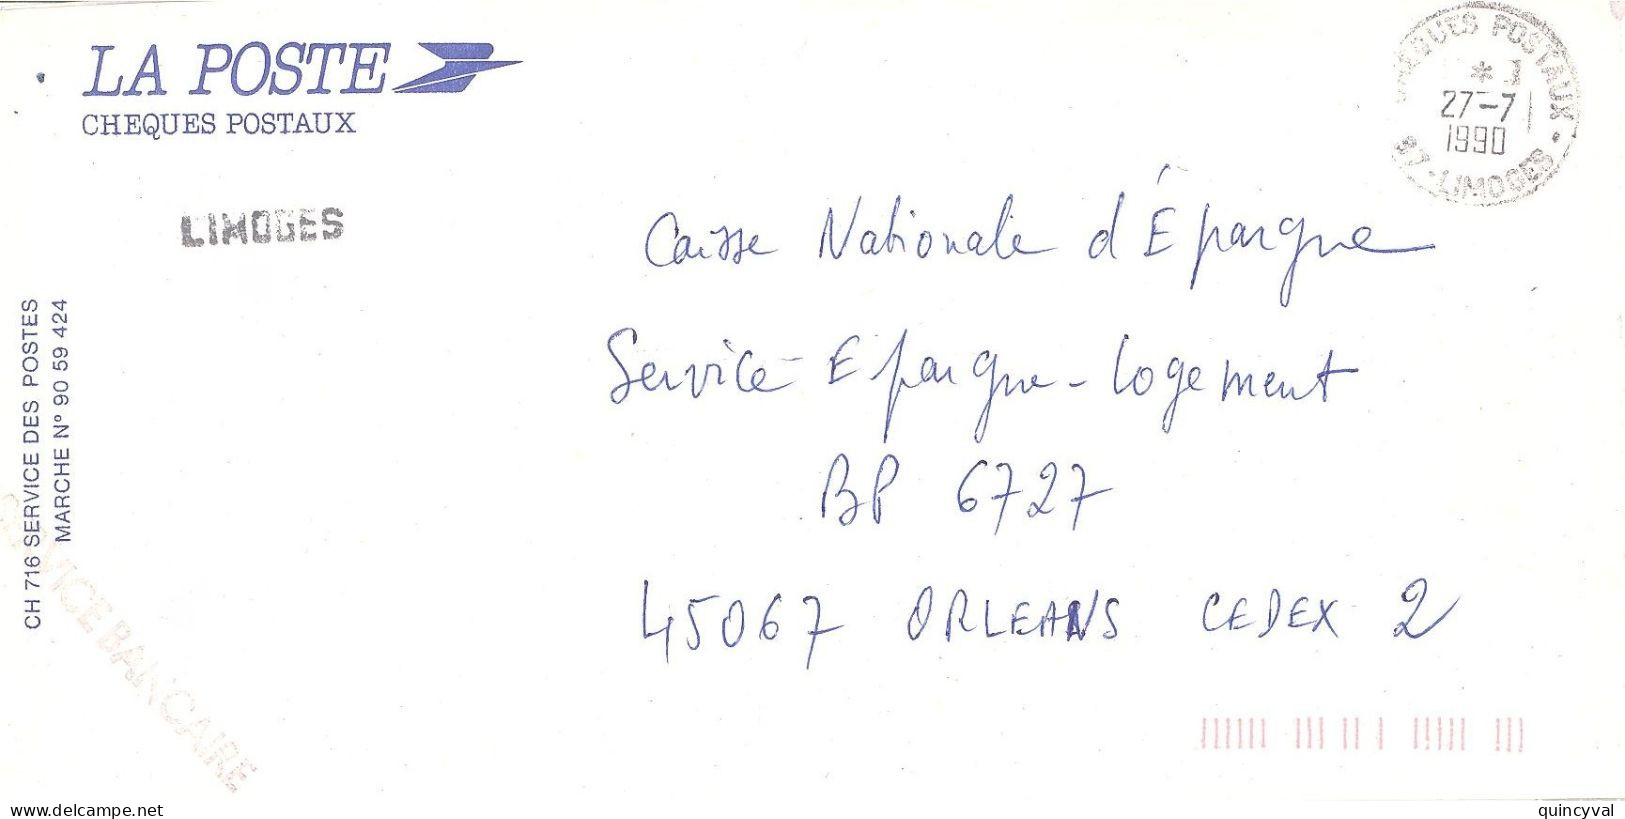 CHEQUES POSTAUX  87 LIMOGES Ob 27 7  1990 Lettre Enveloppe CCP Chèques Postaux  Service BANCAIRE - Cachets Manuels